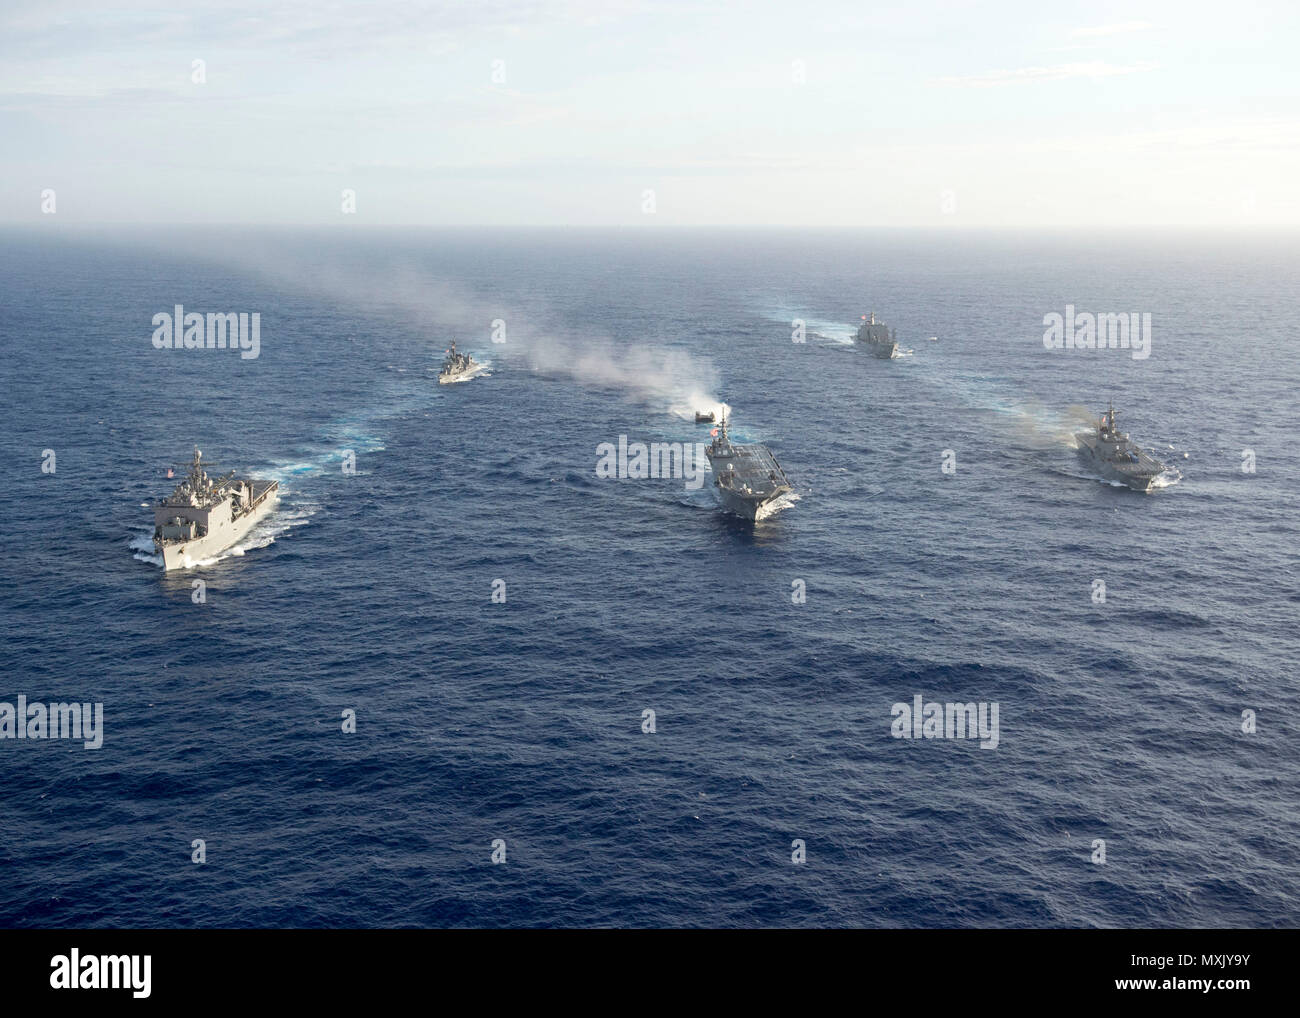 161106-N-ZK021-141 PACIFIC OCEAN (6. November 2016) - Schiffe in scharfen Schwert 2017 Dampf in Formation während eines Foto-Übung teilnehmen. Scharfen Schwert 17 ist eine gemeinsame und bilateralen Bereich Trainingsübung (FTX) zwischen amerikanischen und japanischen Kräfte bedeutete, Bereitschaft und Interoperabilität im Rahmen der US-japanische Bündnis zu erhöhen. (Foto: U.S. Navy Petty Officer First Class Nardel Gervacio/freigegeben) Stockfoto